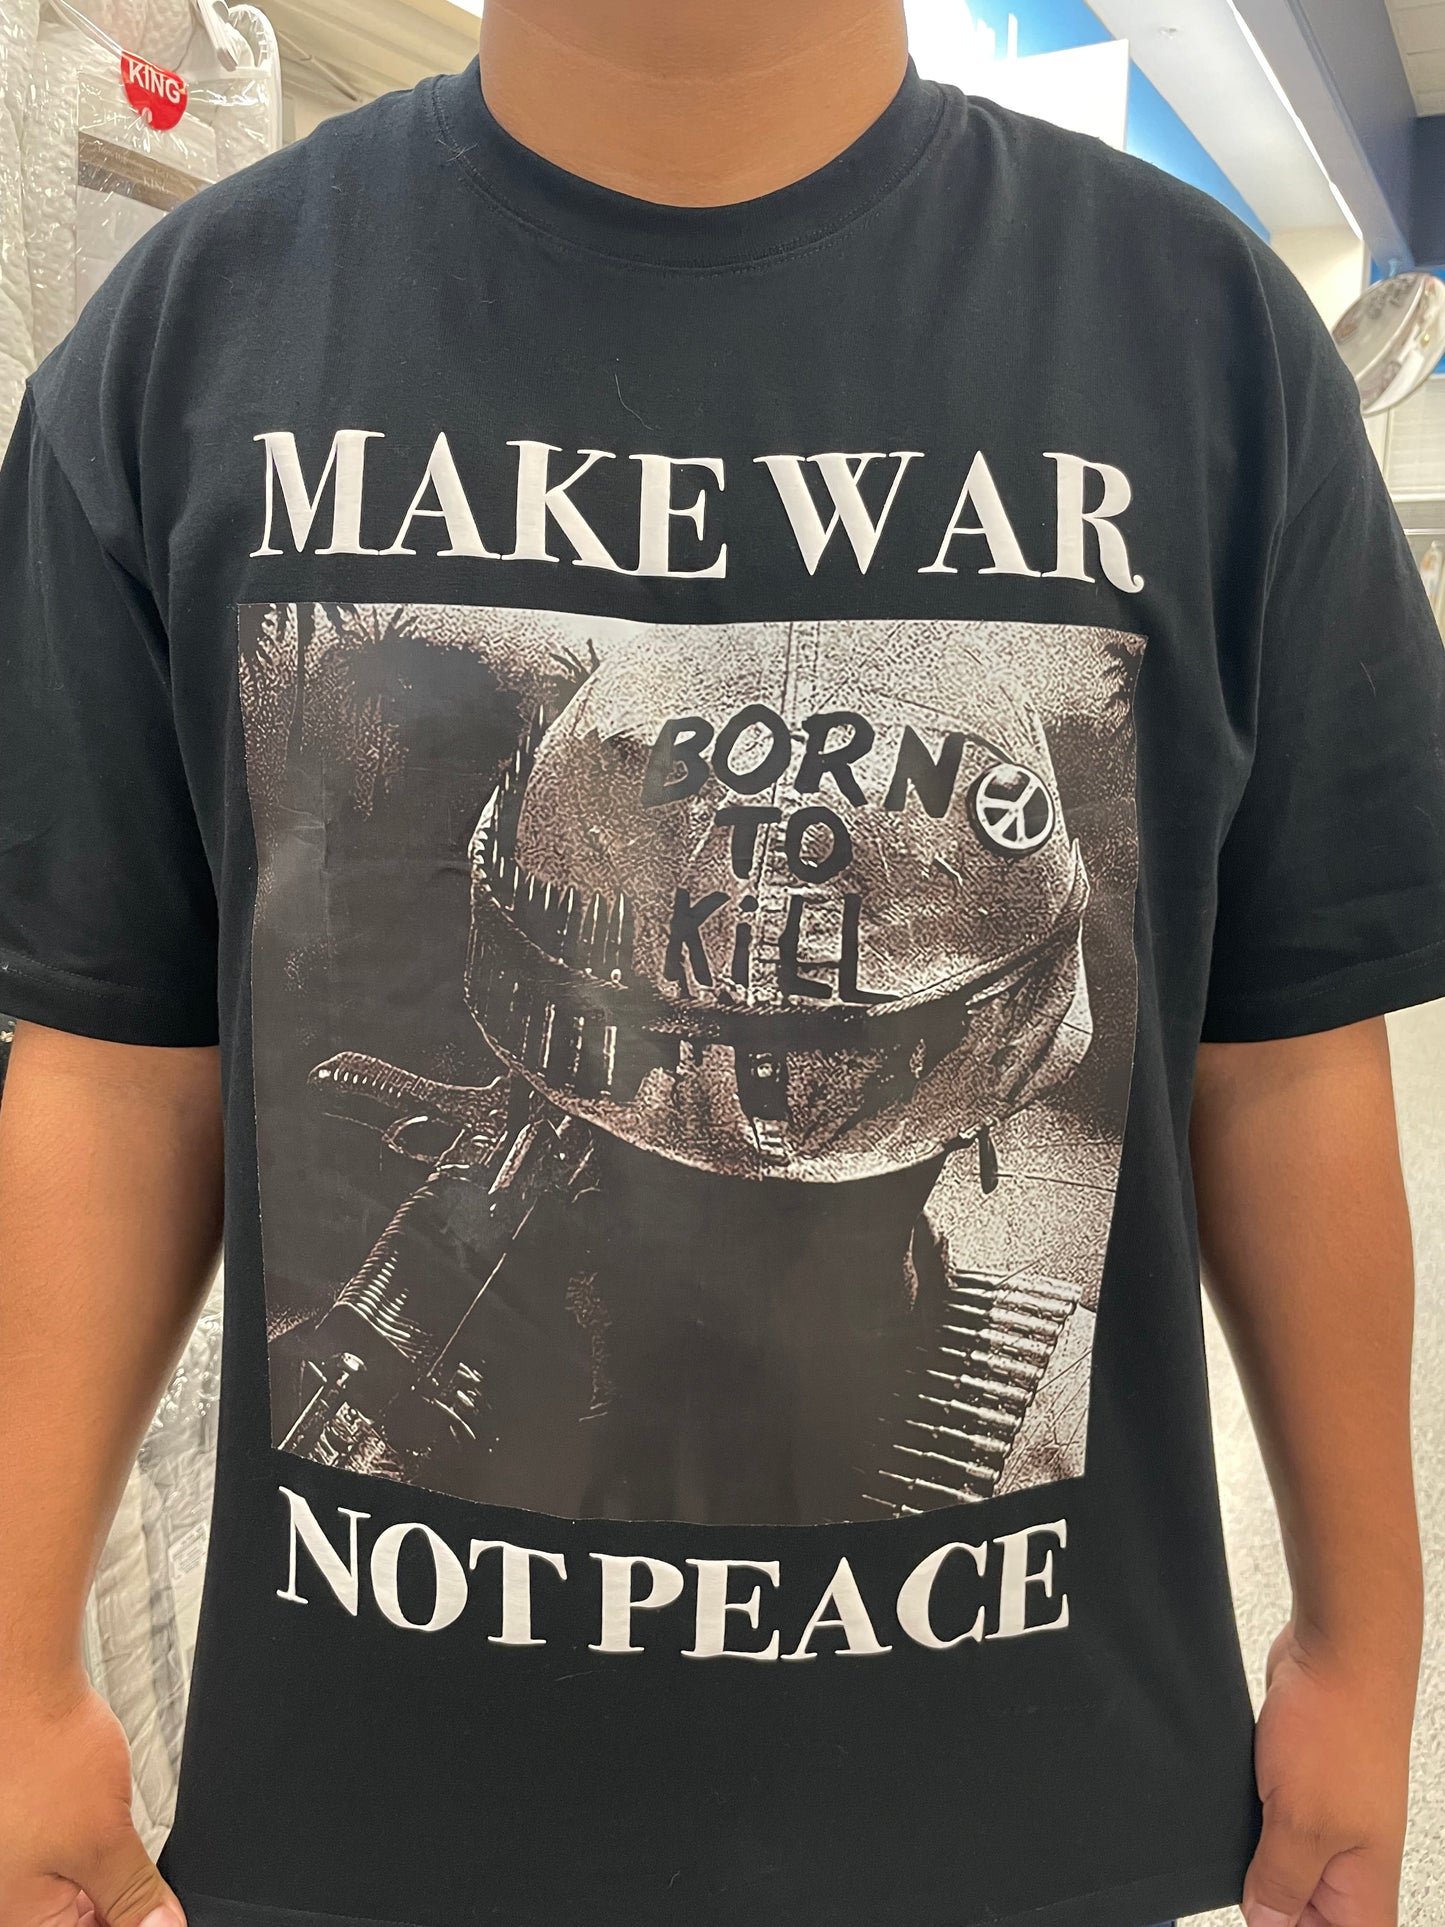 MAKE WAR NOT PEACE soldier shirt